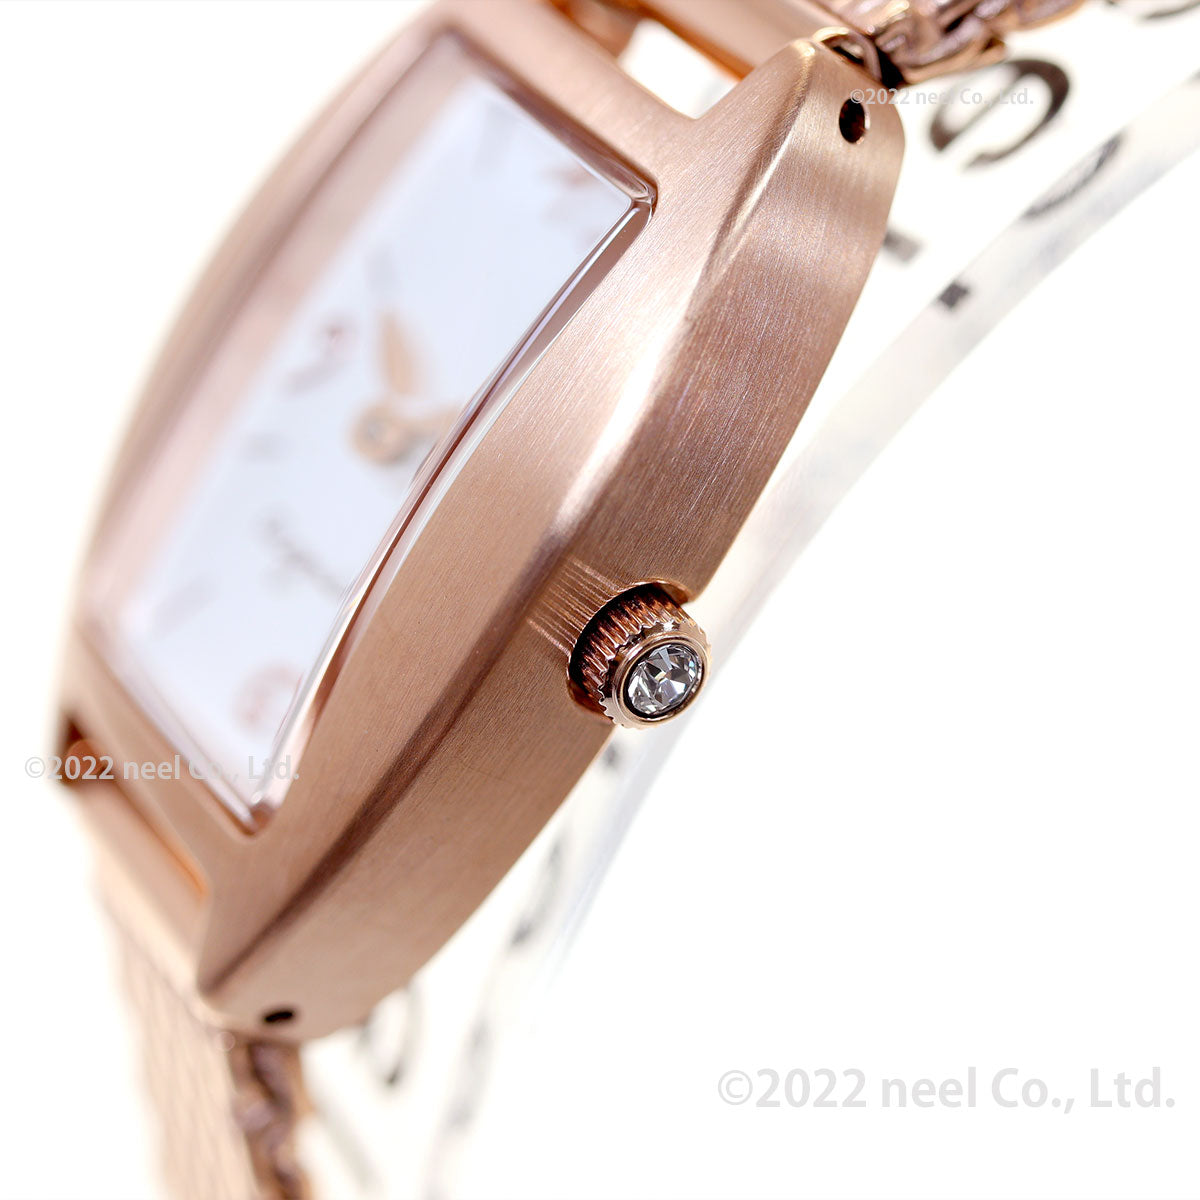 アニエスベー 時計 レディース FCSK745 give love 限定モデル 腕時計